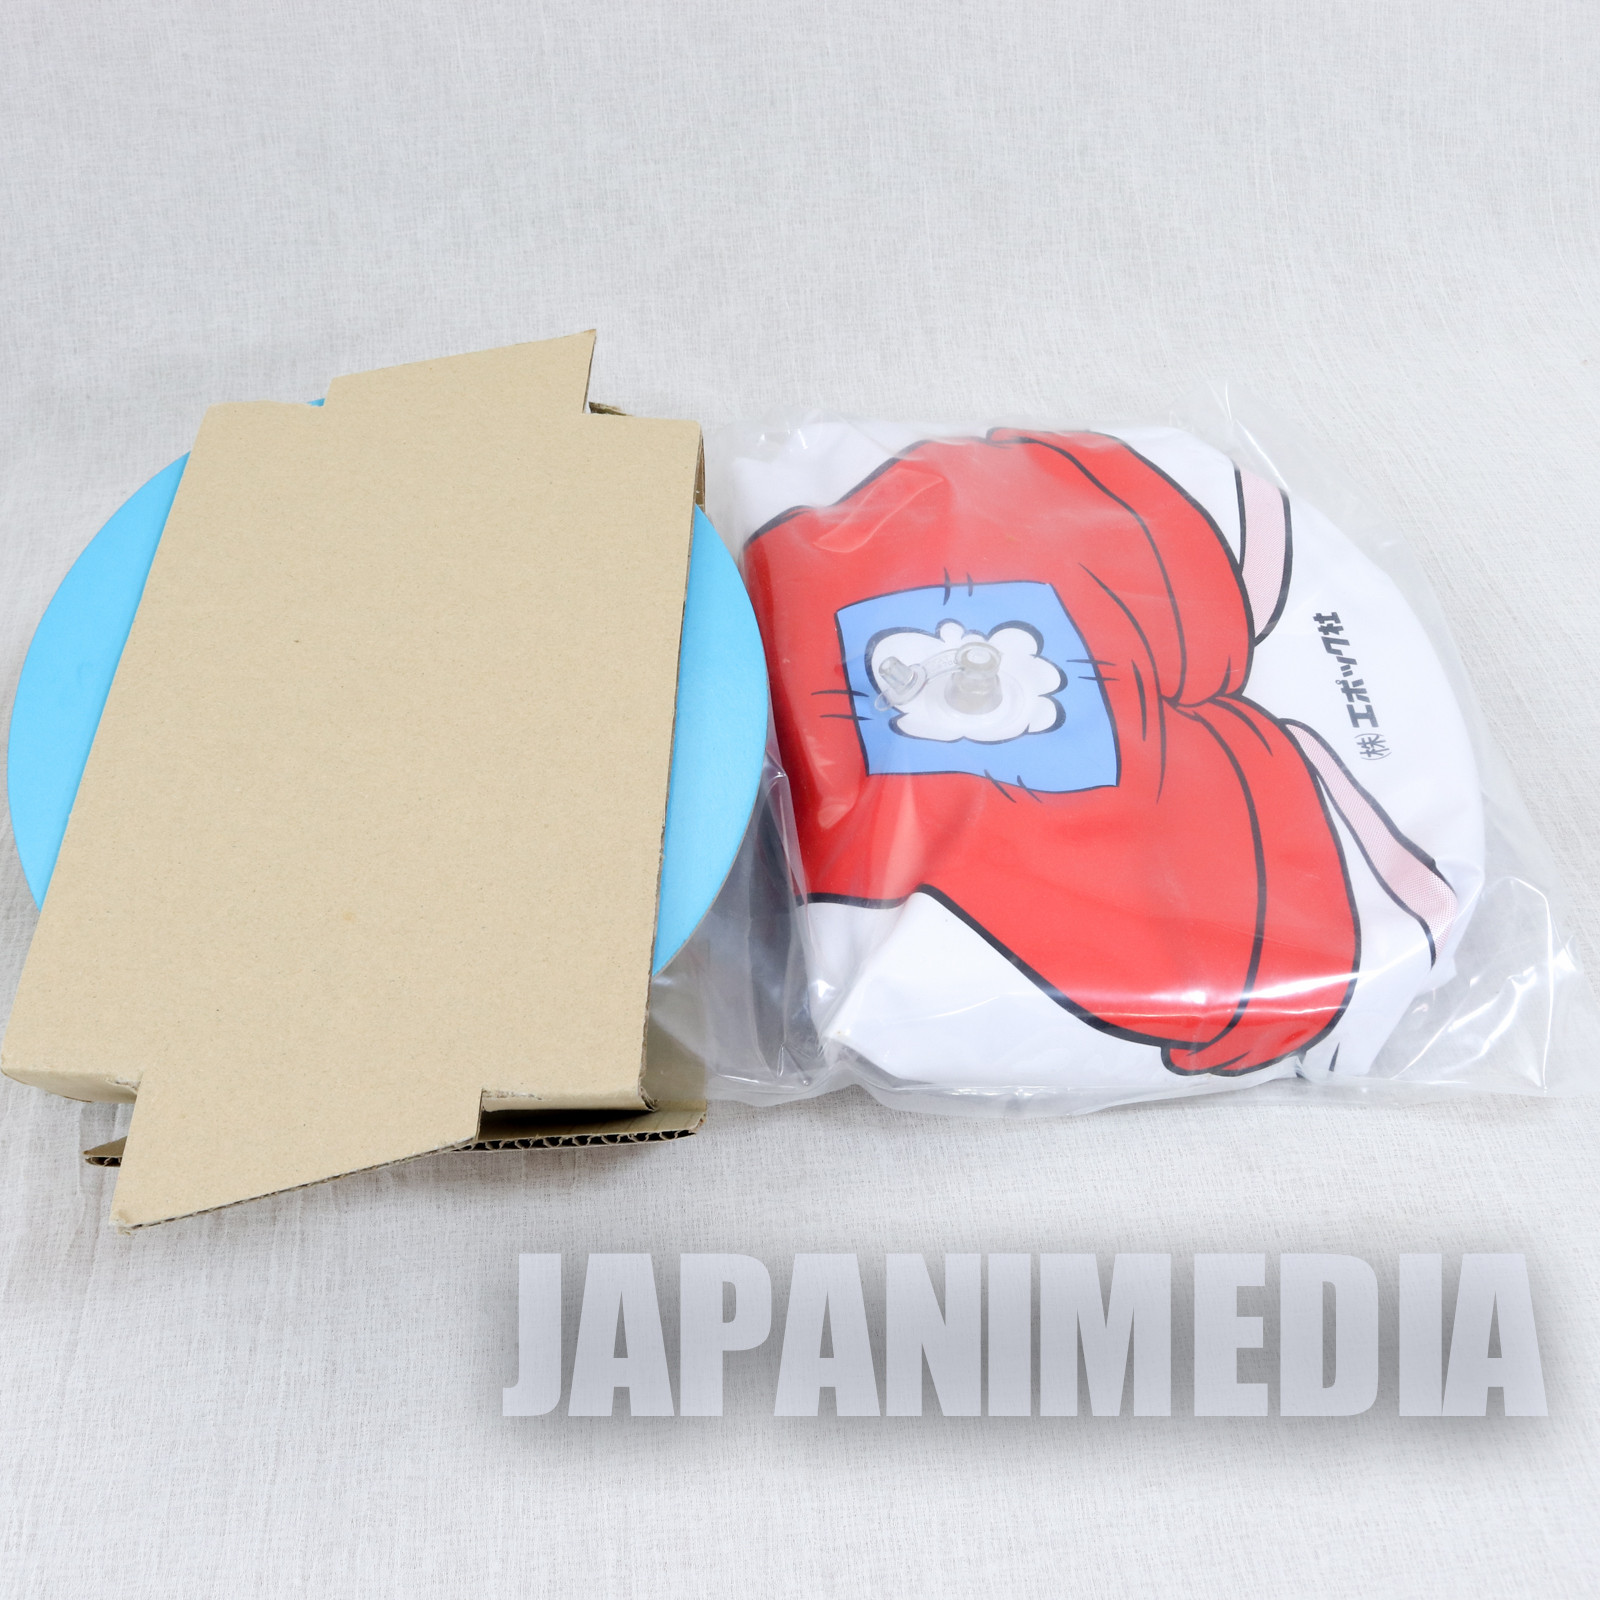 [JUNK ITEM] Retro Who Framed Roger Rabbit Balloon Doll Epoch-sha JAPAN